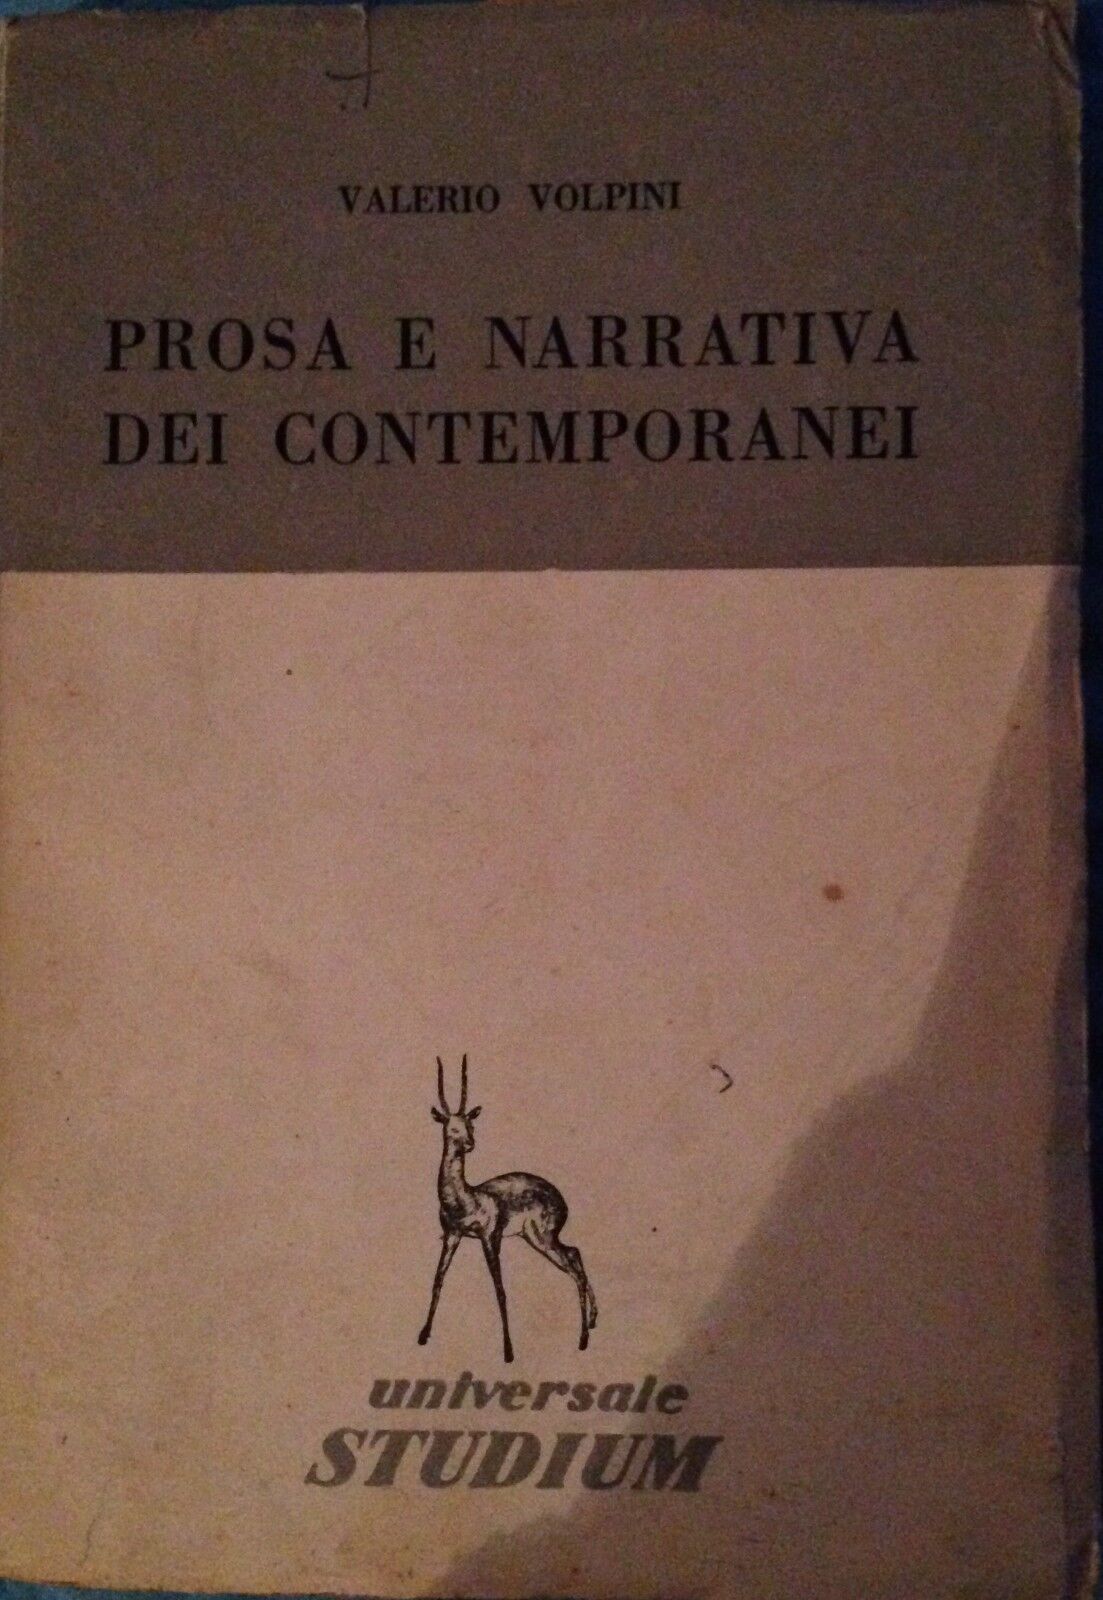 Prosa e narrativa dei contemporanei - Valerio Volpini - Studium - 1957 - MP